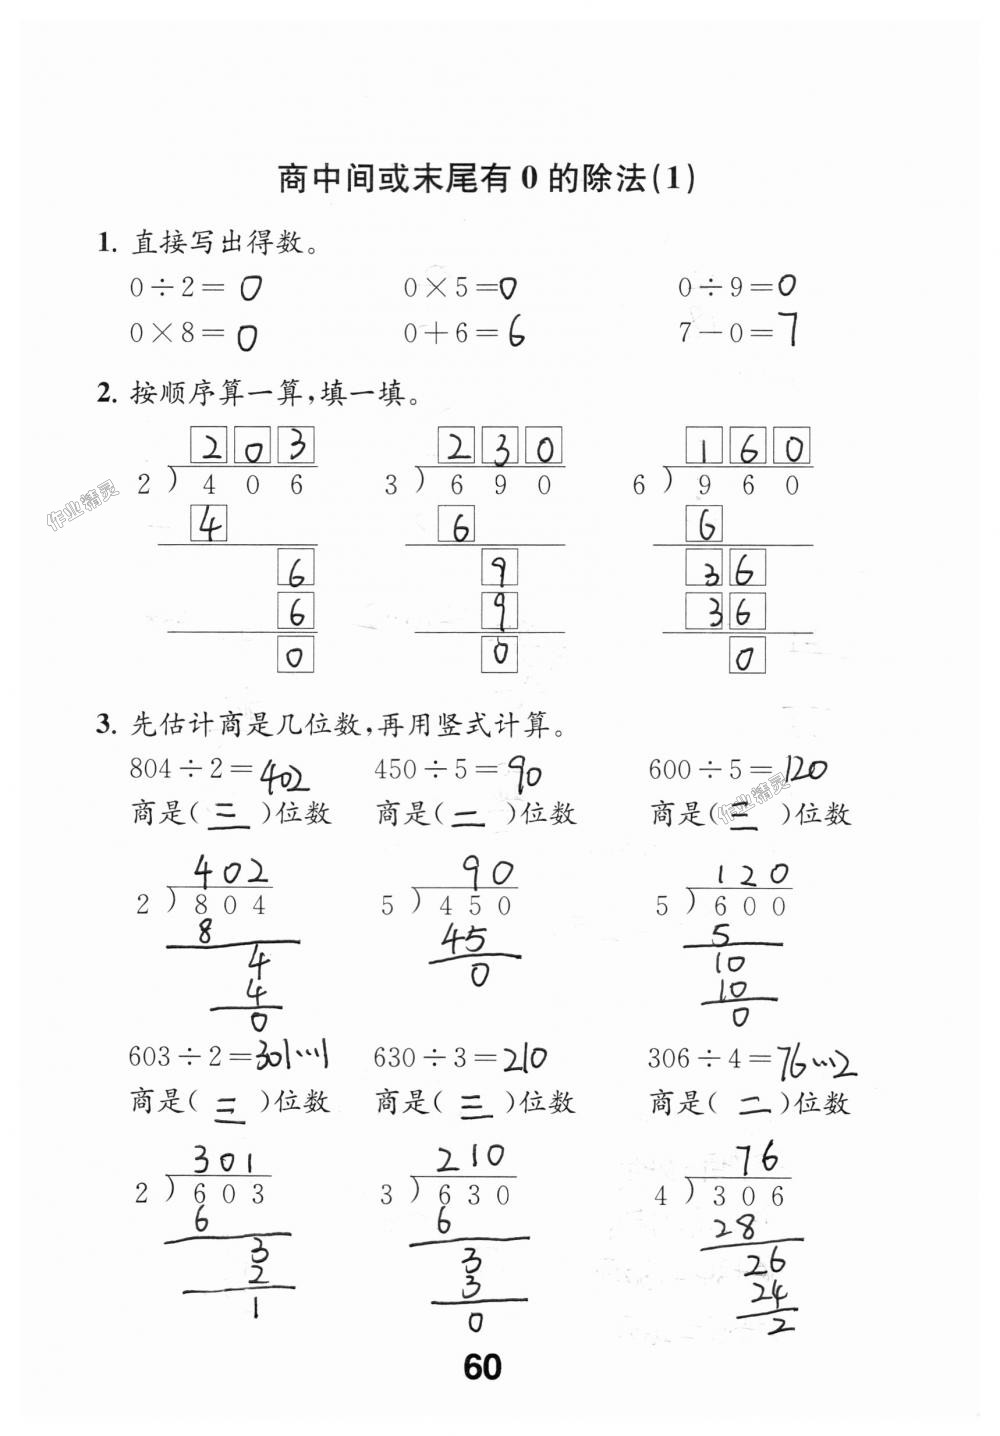 2018年数学补充习题三年级上册苏教版江苏凤凰教育出版社 第60页